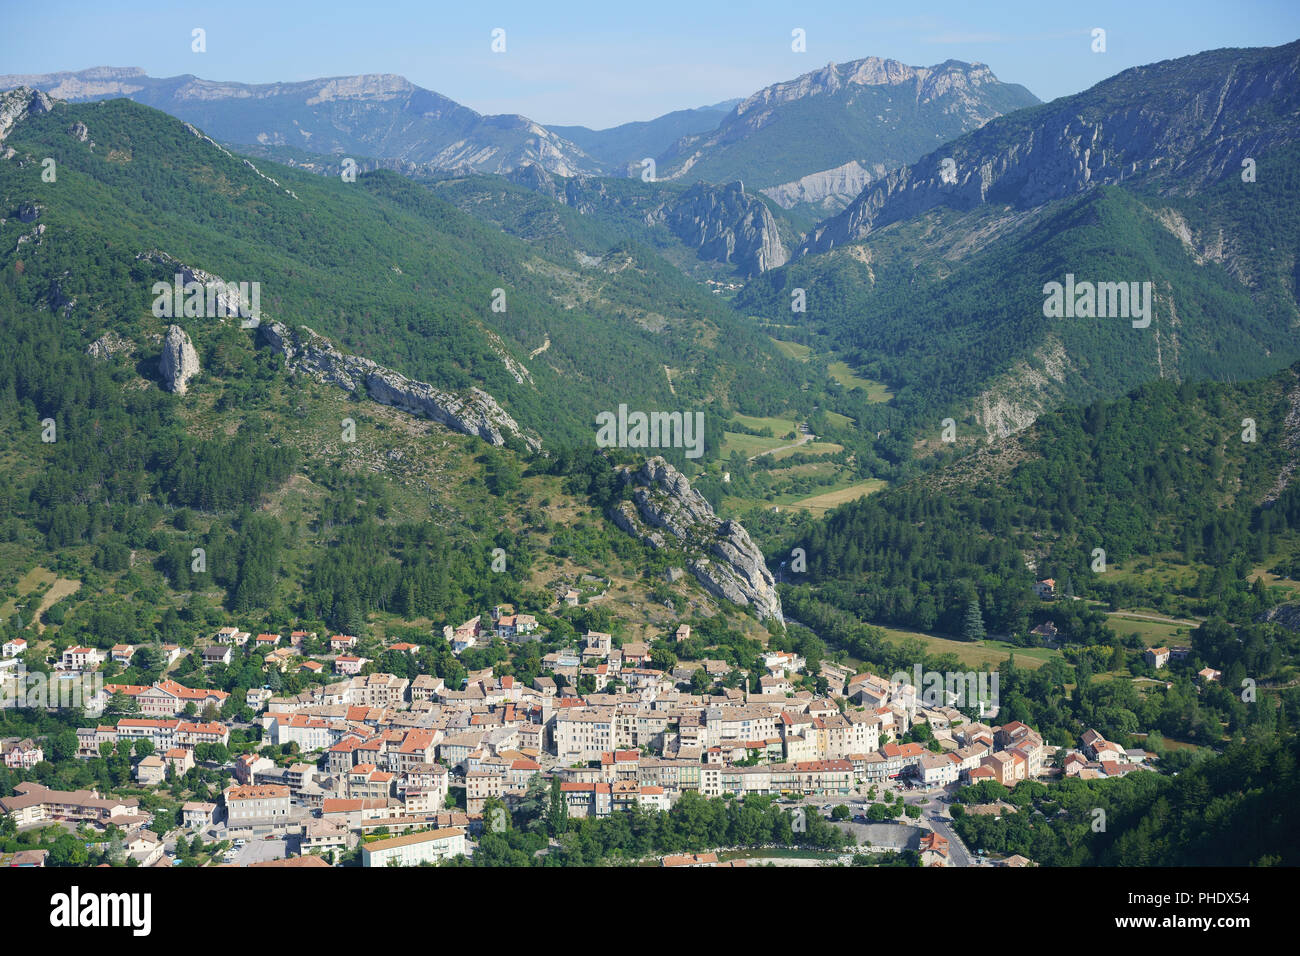 VISTA AEREA. Pittoresco villaggio medievale in un ambiente incontaminato di foresta e montagne nella Valle di Buëch. Serres, Hautes-Alpes, Provenza, Francia. Foto Stock